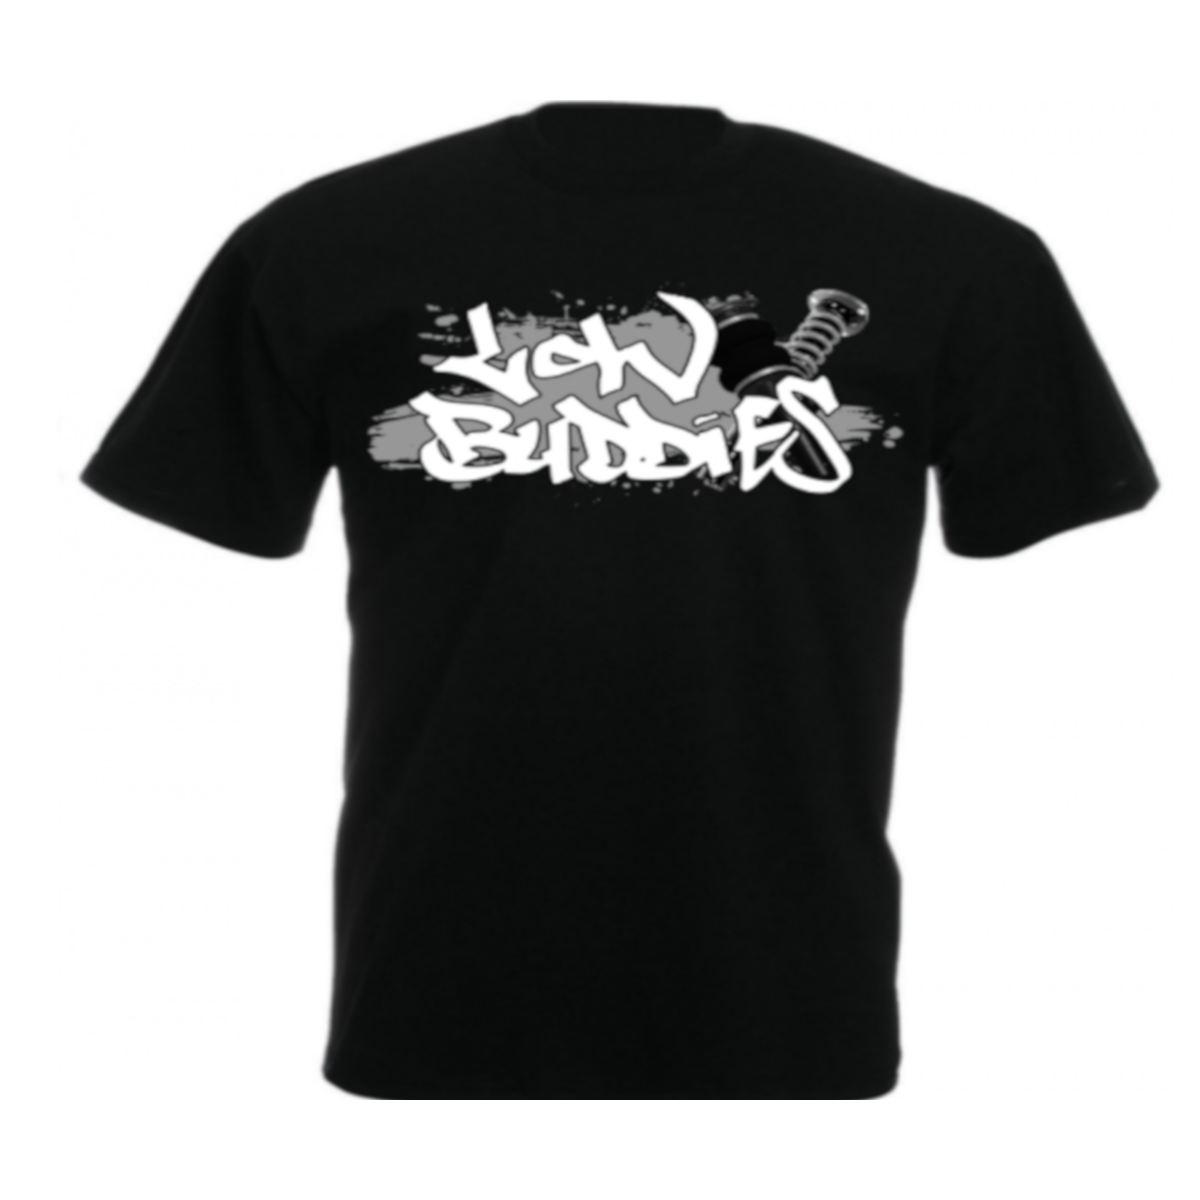 Low Buddies - Männer T-Shirt - Splash - schwarz